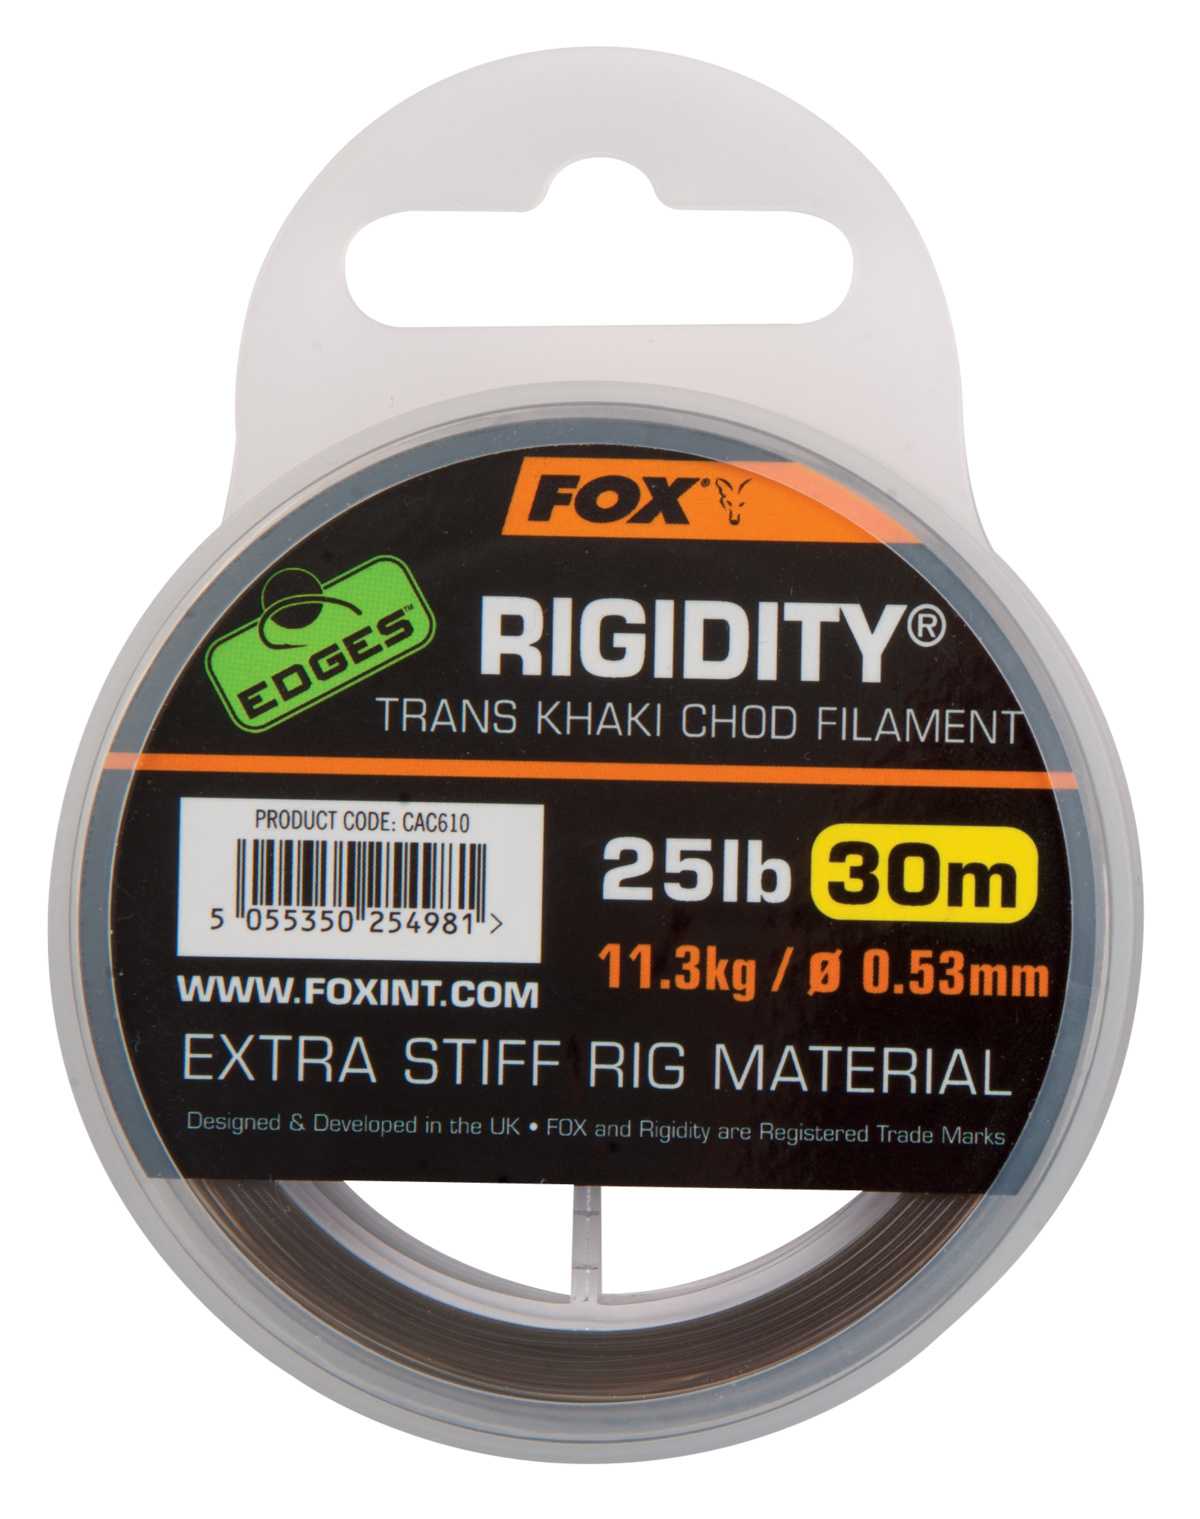 Fox náväzcový vlasec edges rigidity chod filament 30 m trans khaki-priemer 0